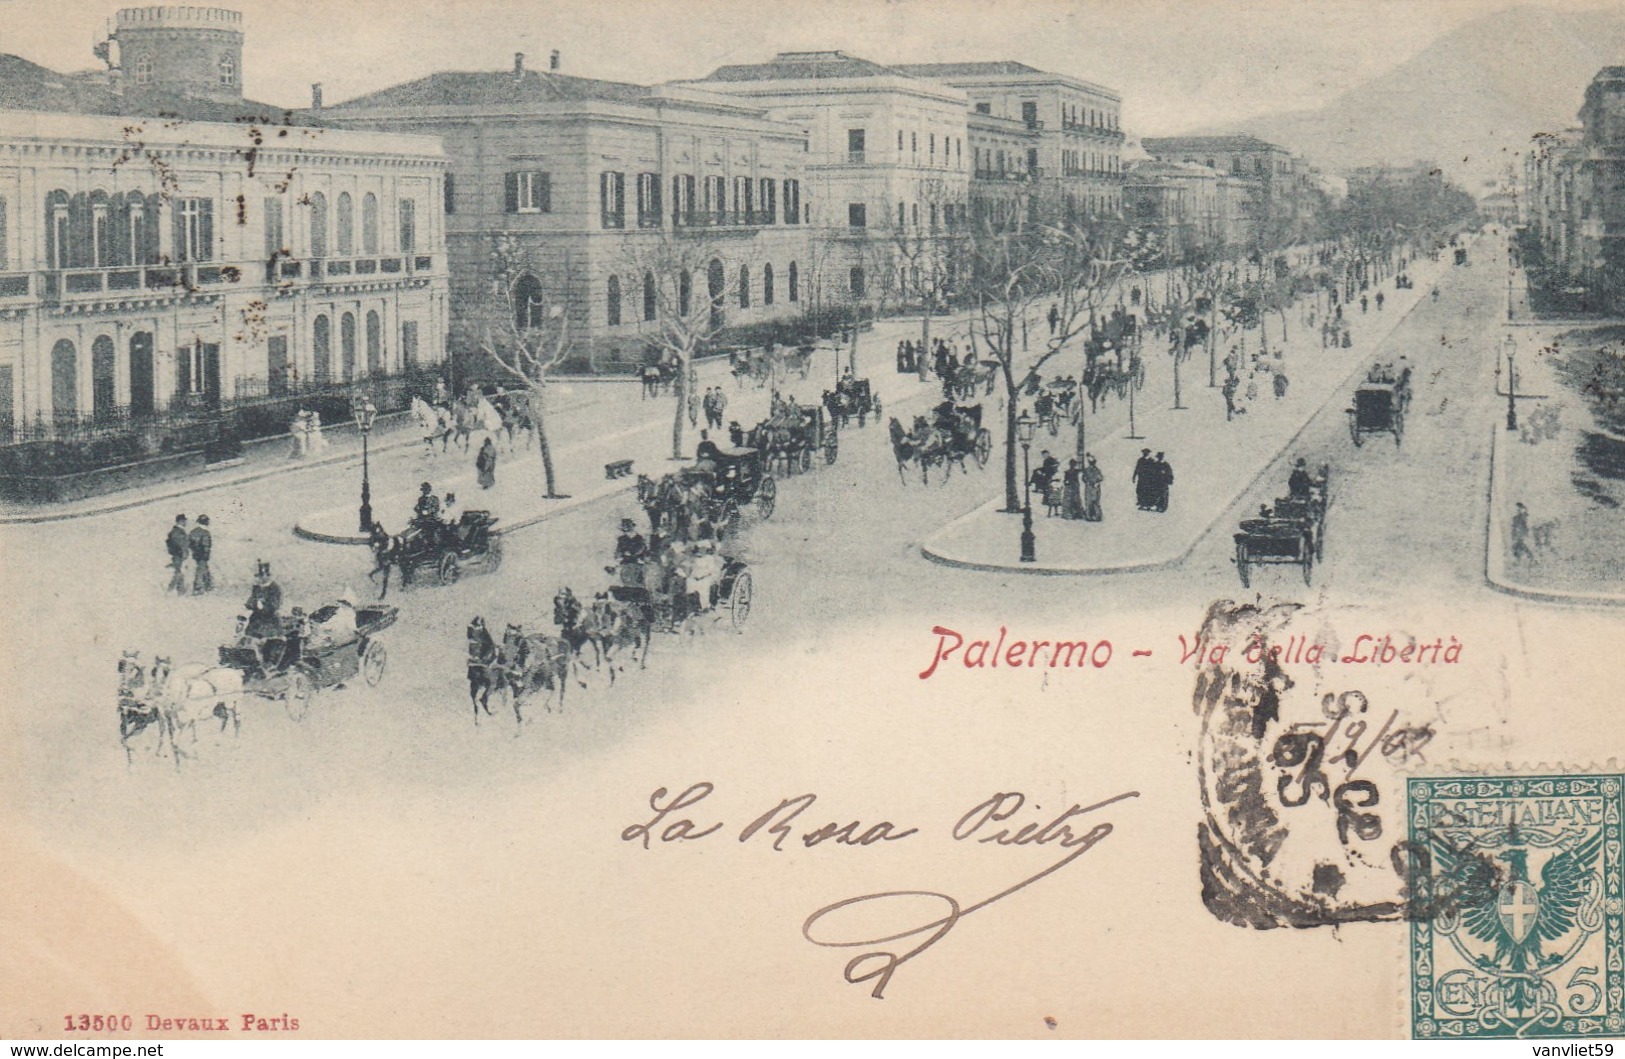 PALERMO-VIA DELLA LIBERTà-CARTOLINA VIAGGIATA IL 5-9-1902 - Palermo